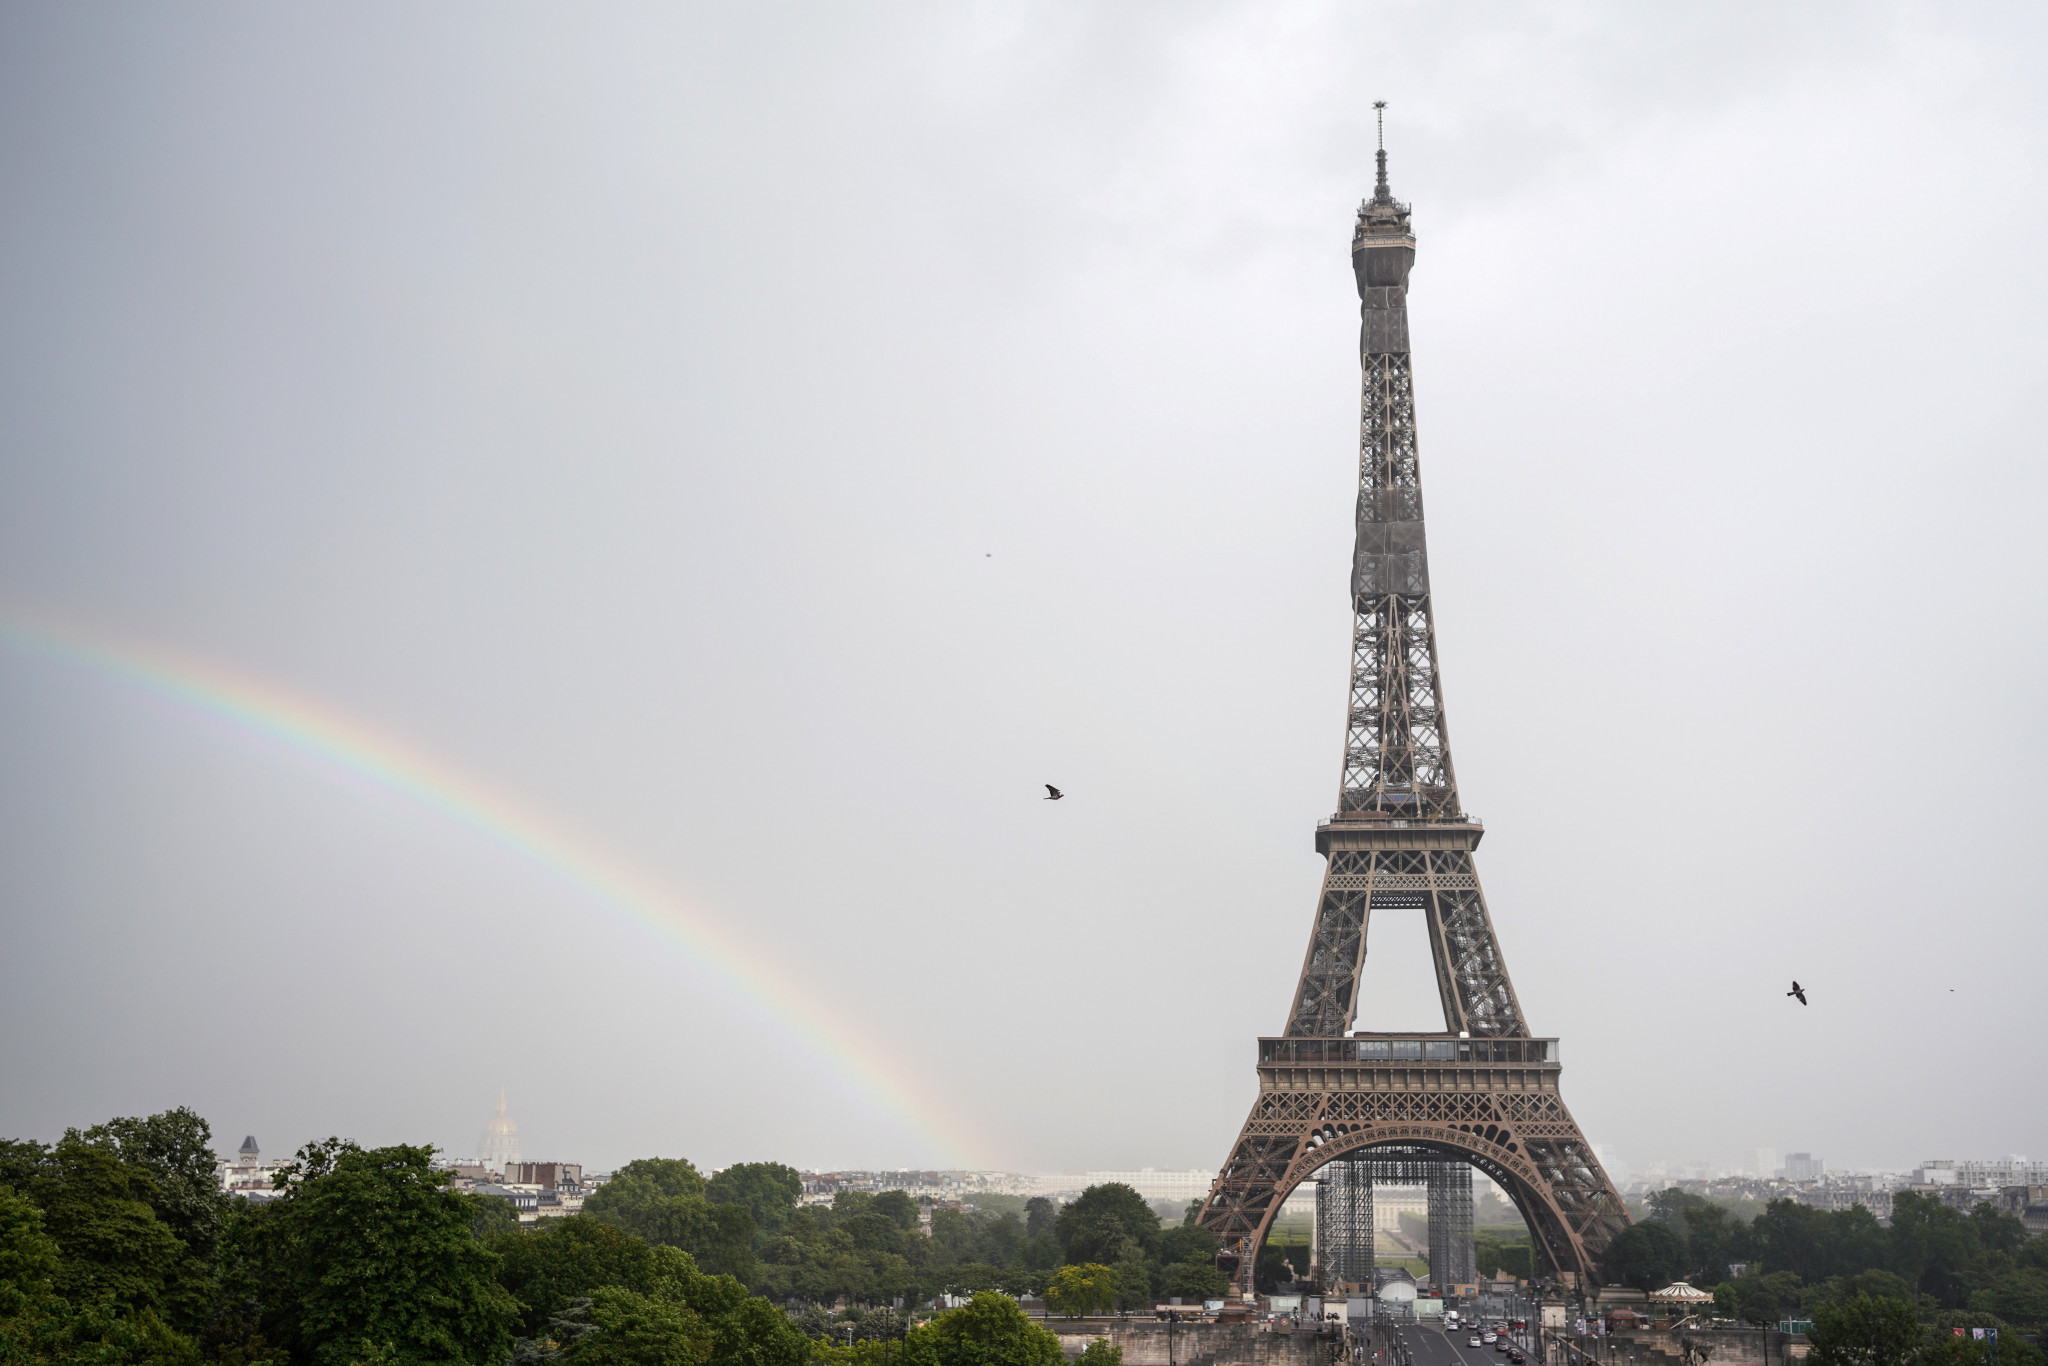 Eiffel Tower announced as main venue for Global Sports Week Paris 